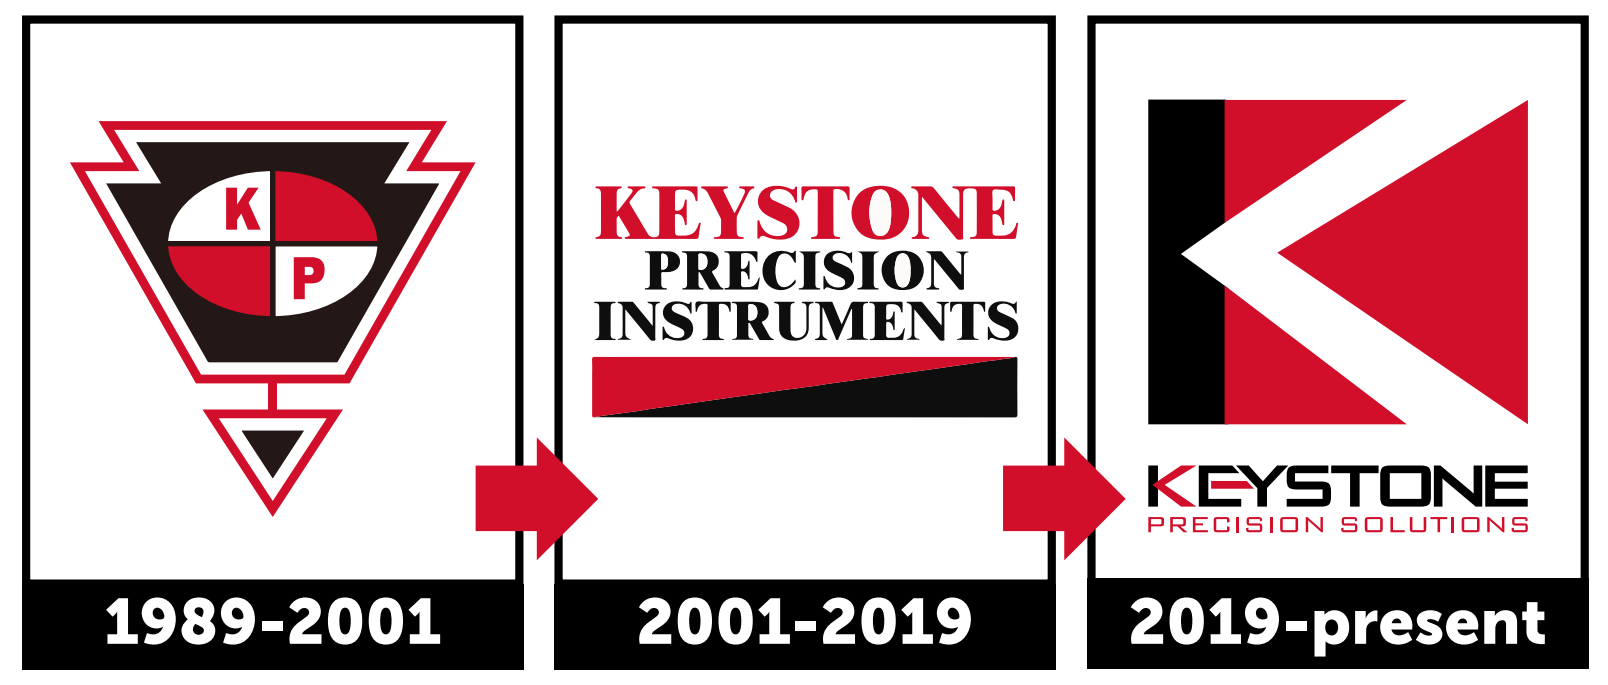 Keystone Brand Evolution